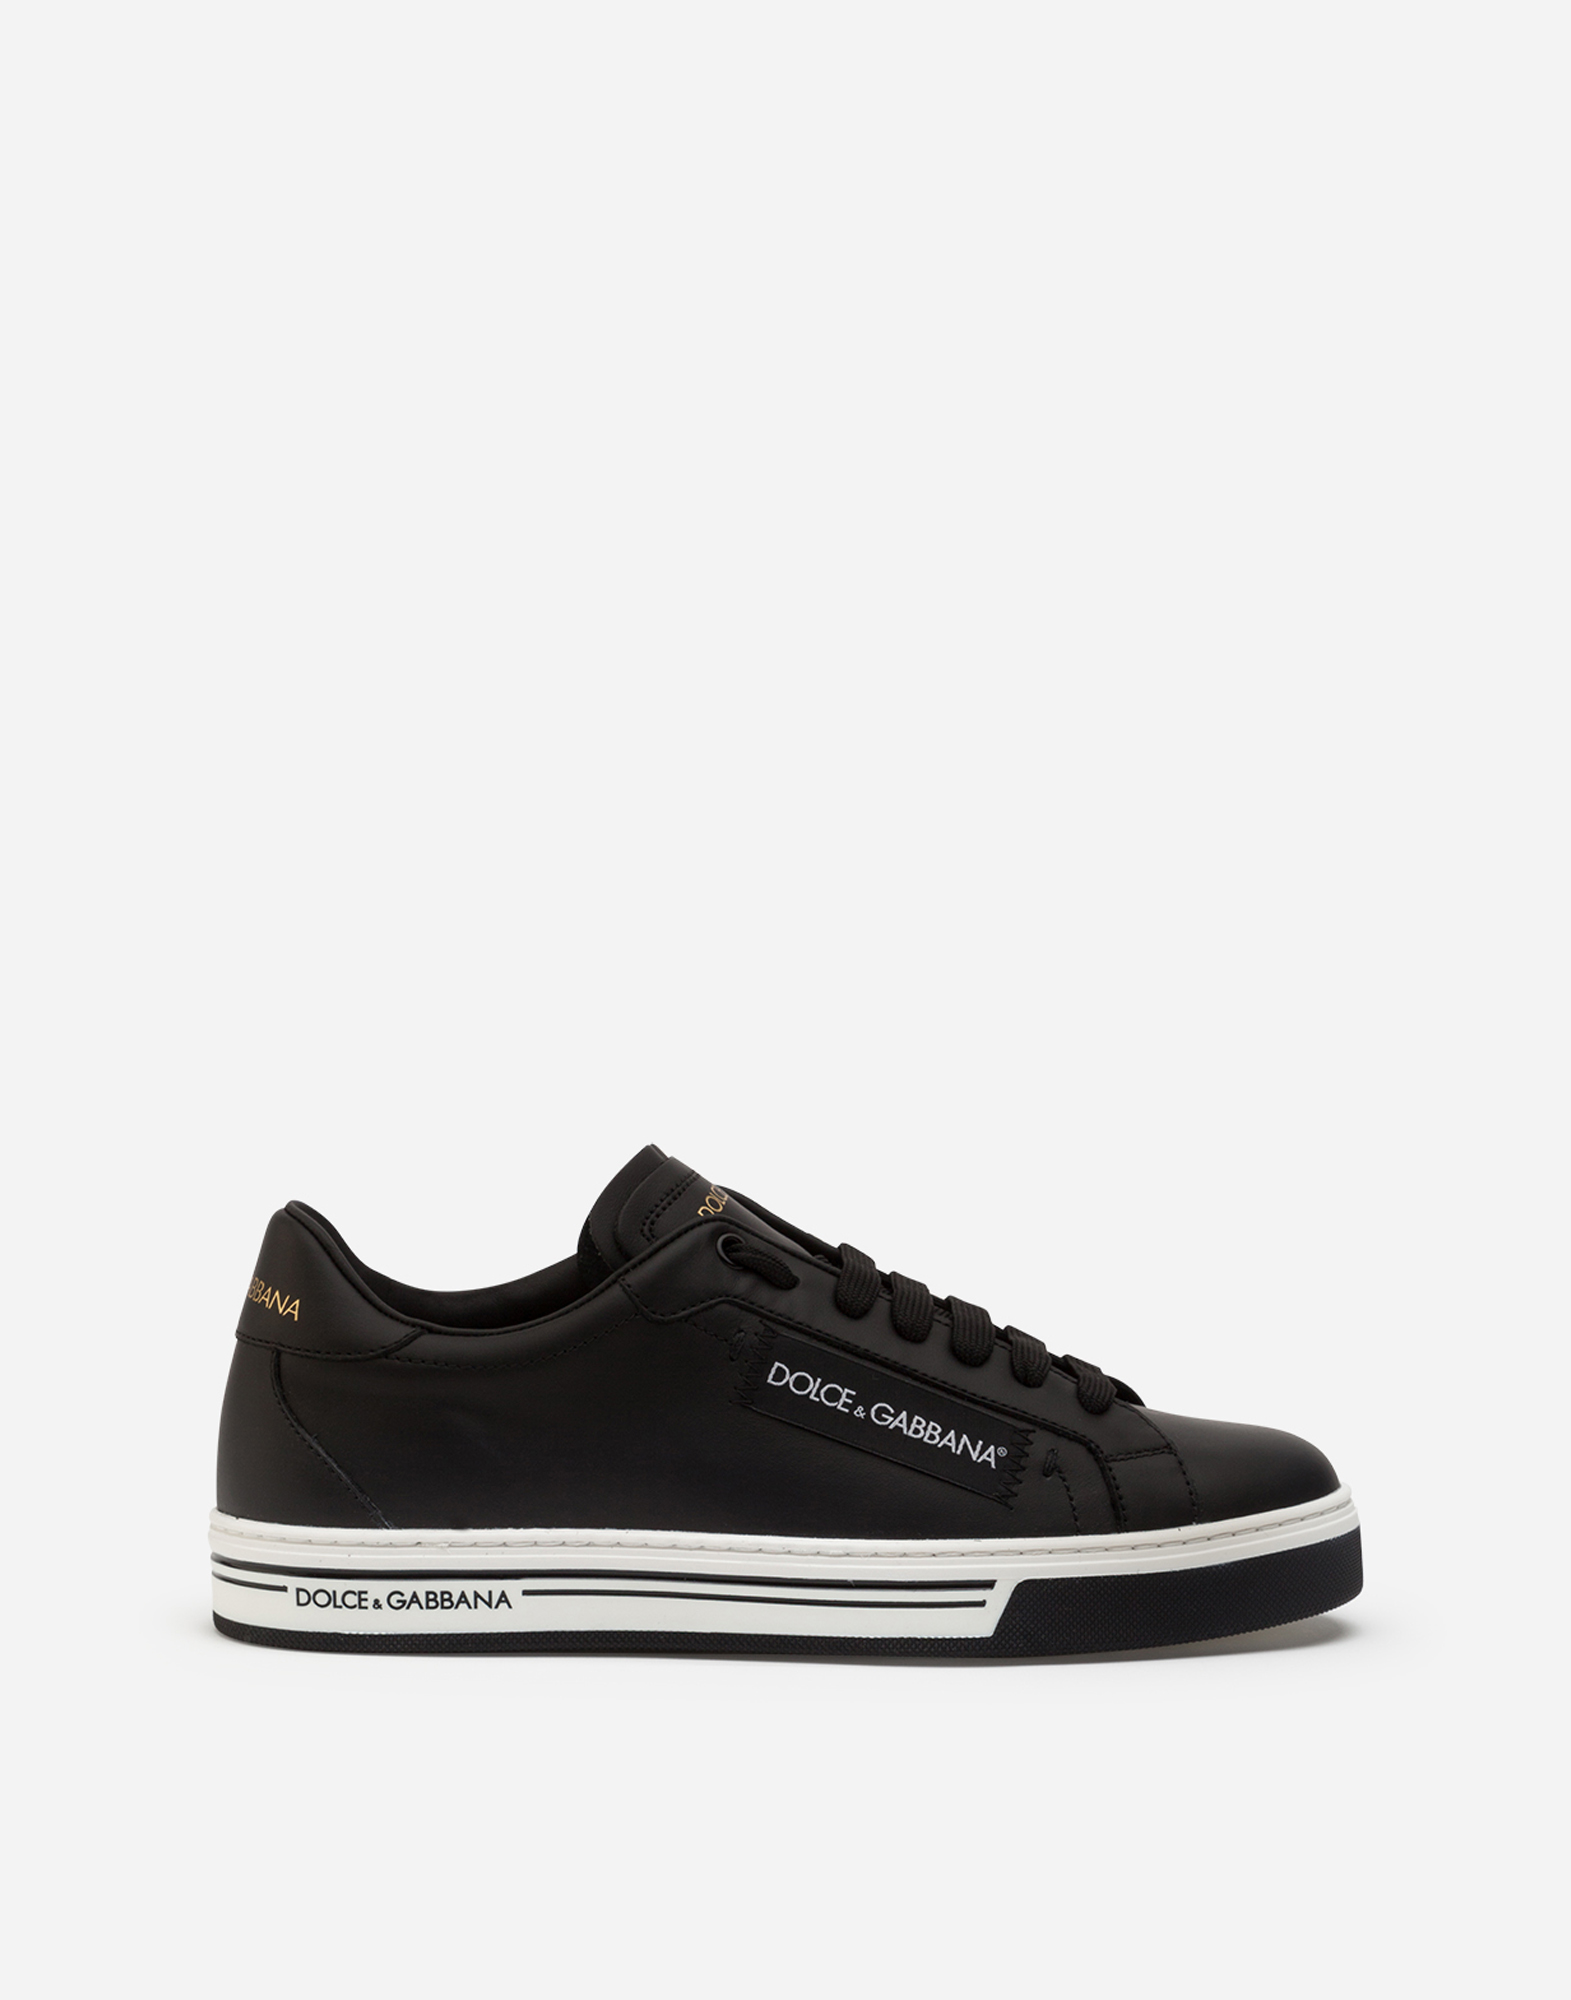 Roma sneakers in nappa calfskin in Black